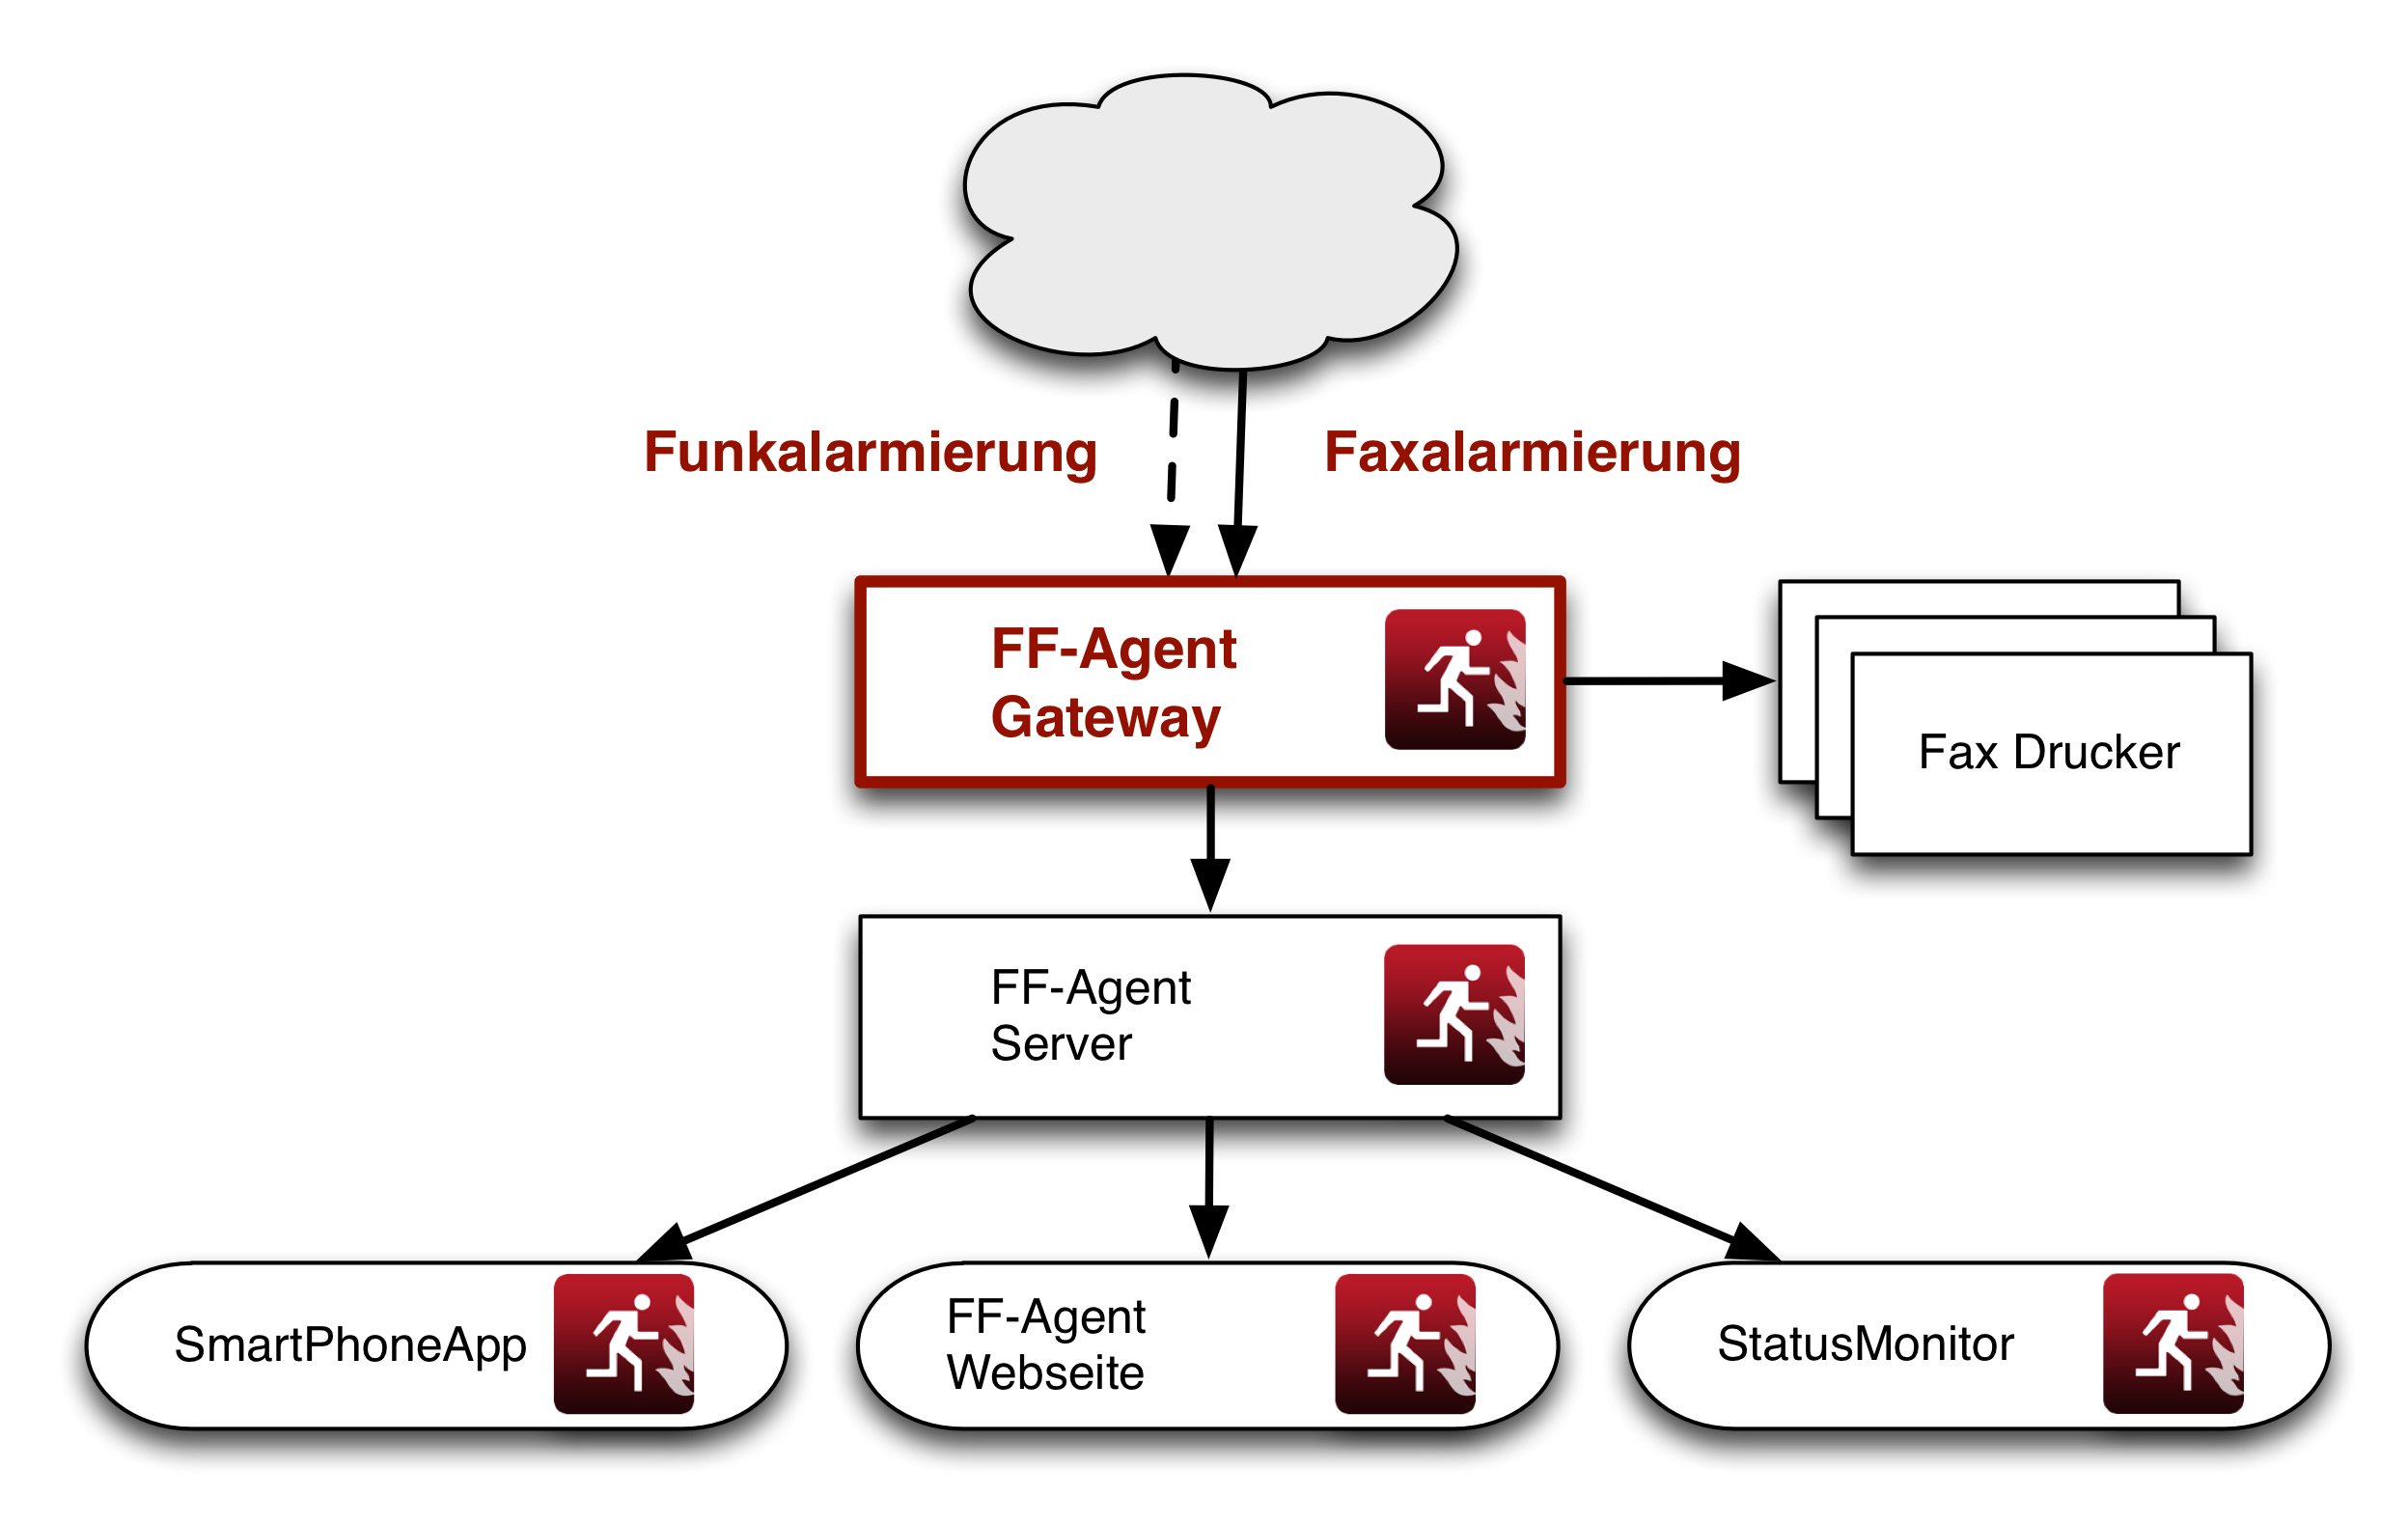 Infrastruktur des FF-Agent Gateway